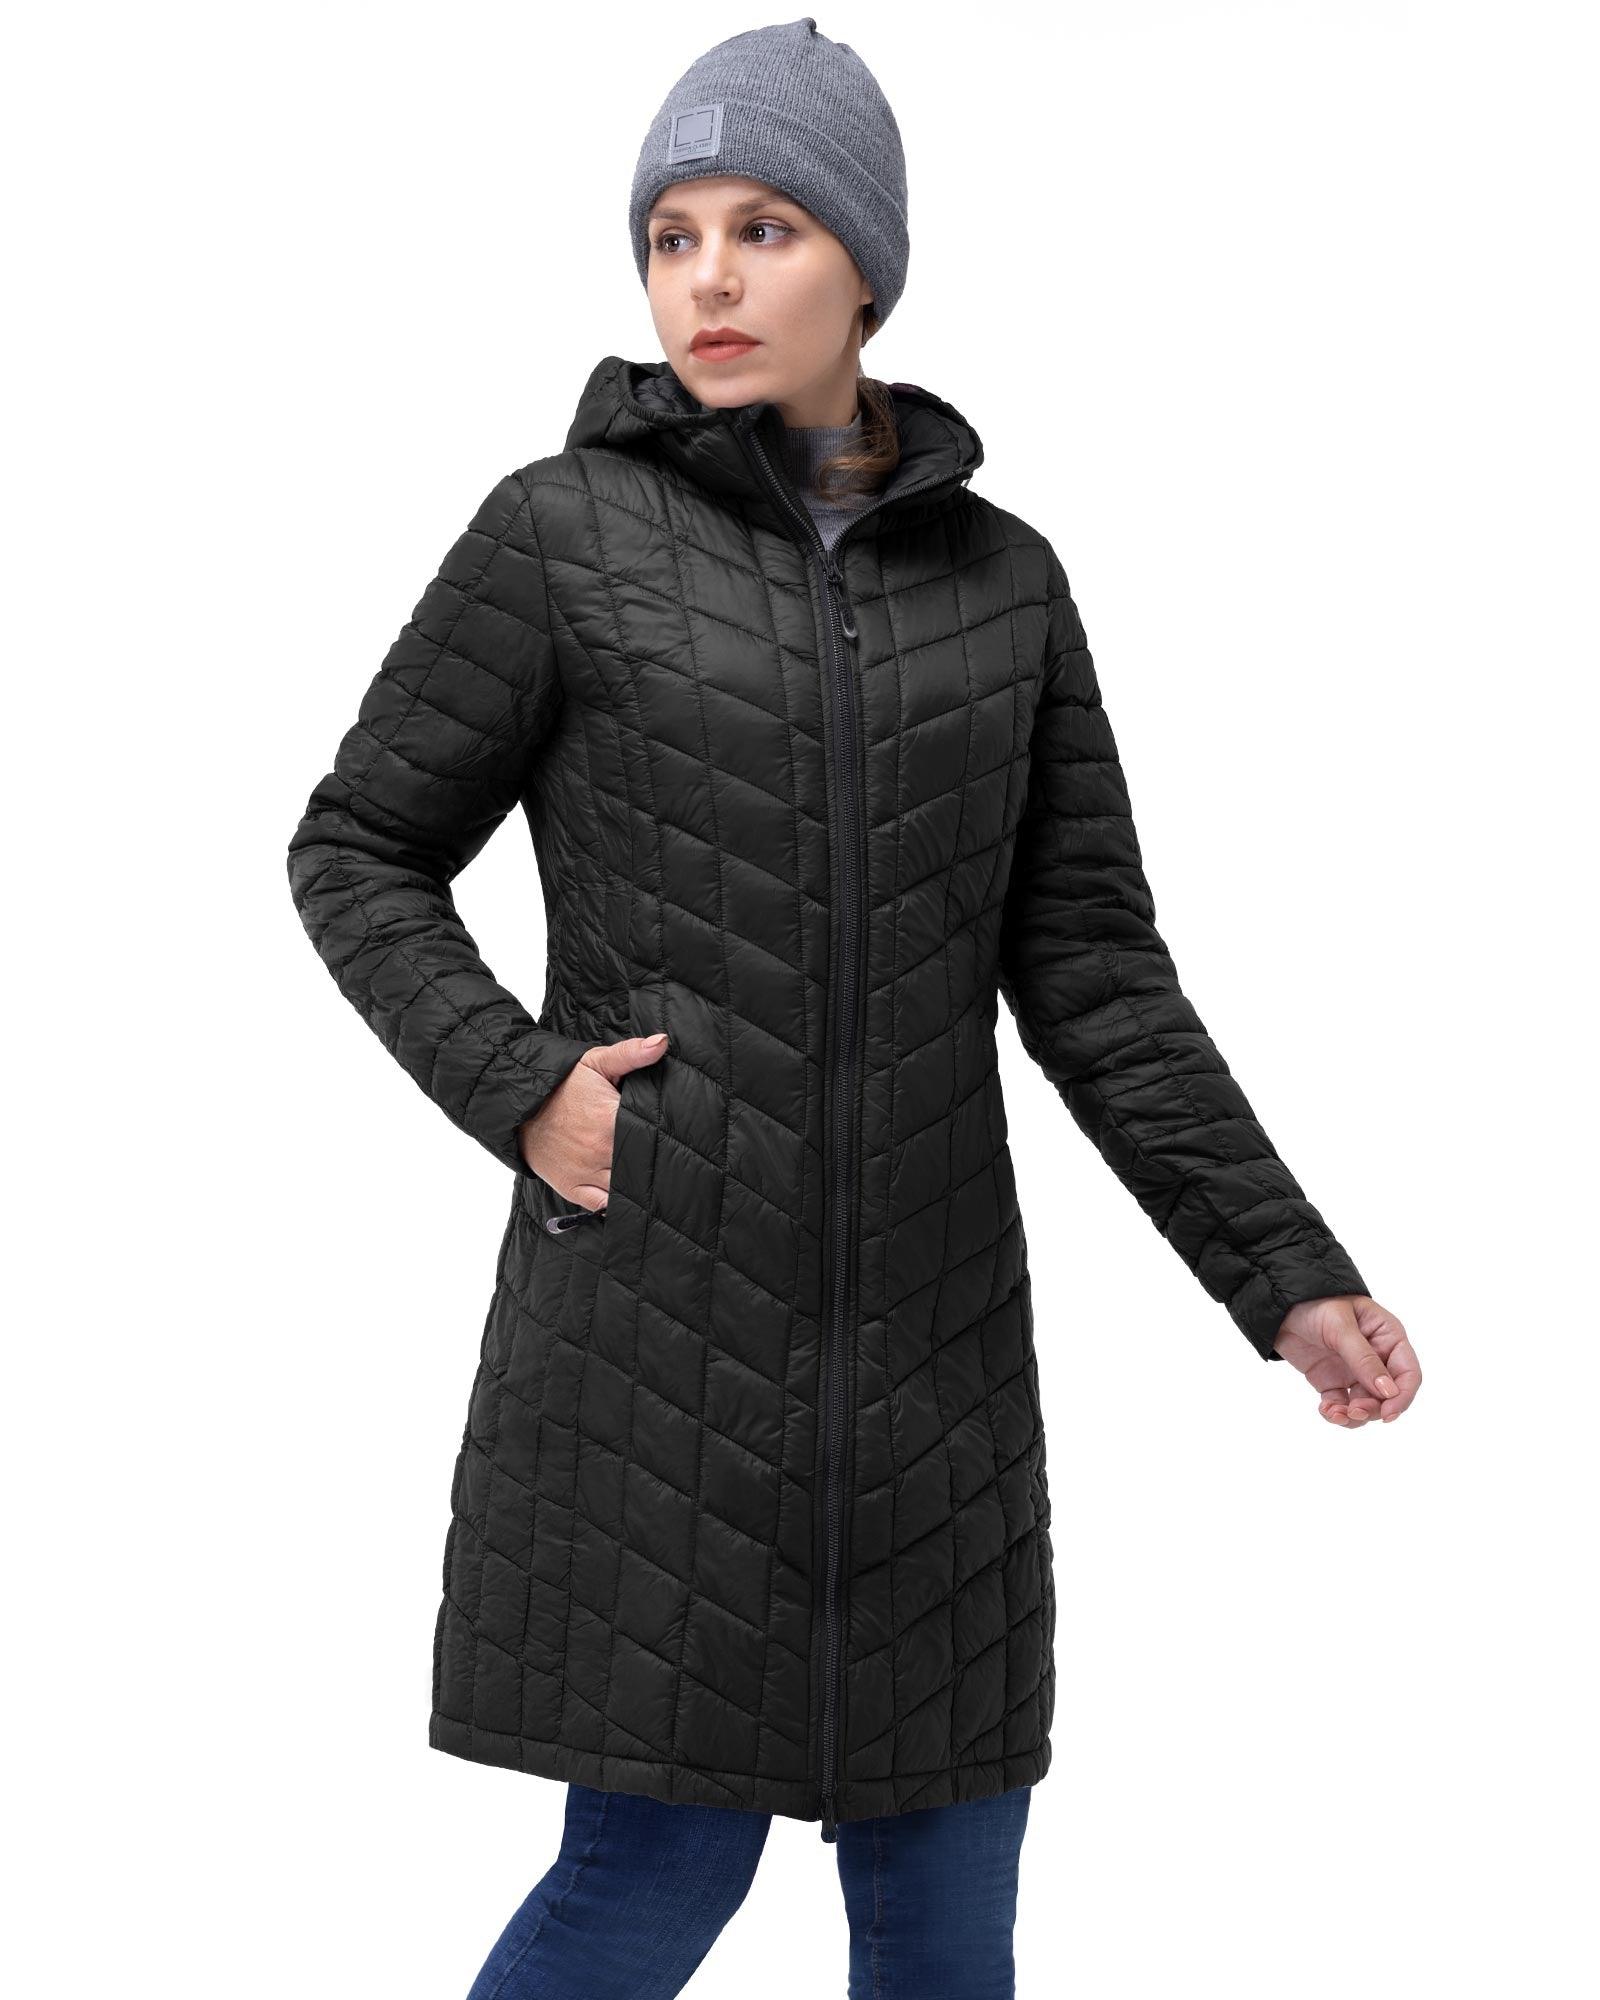 Women's Winter Coats, Long & Warm Winter Coats